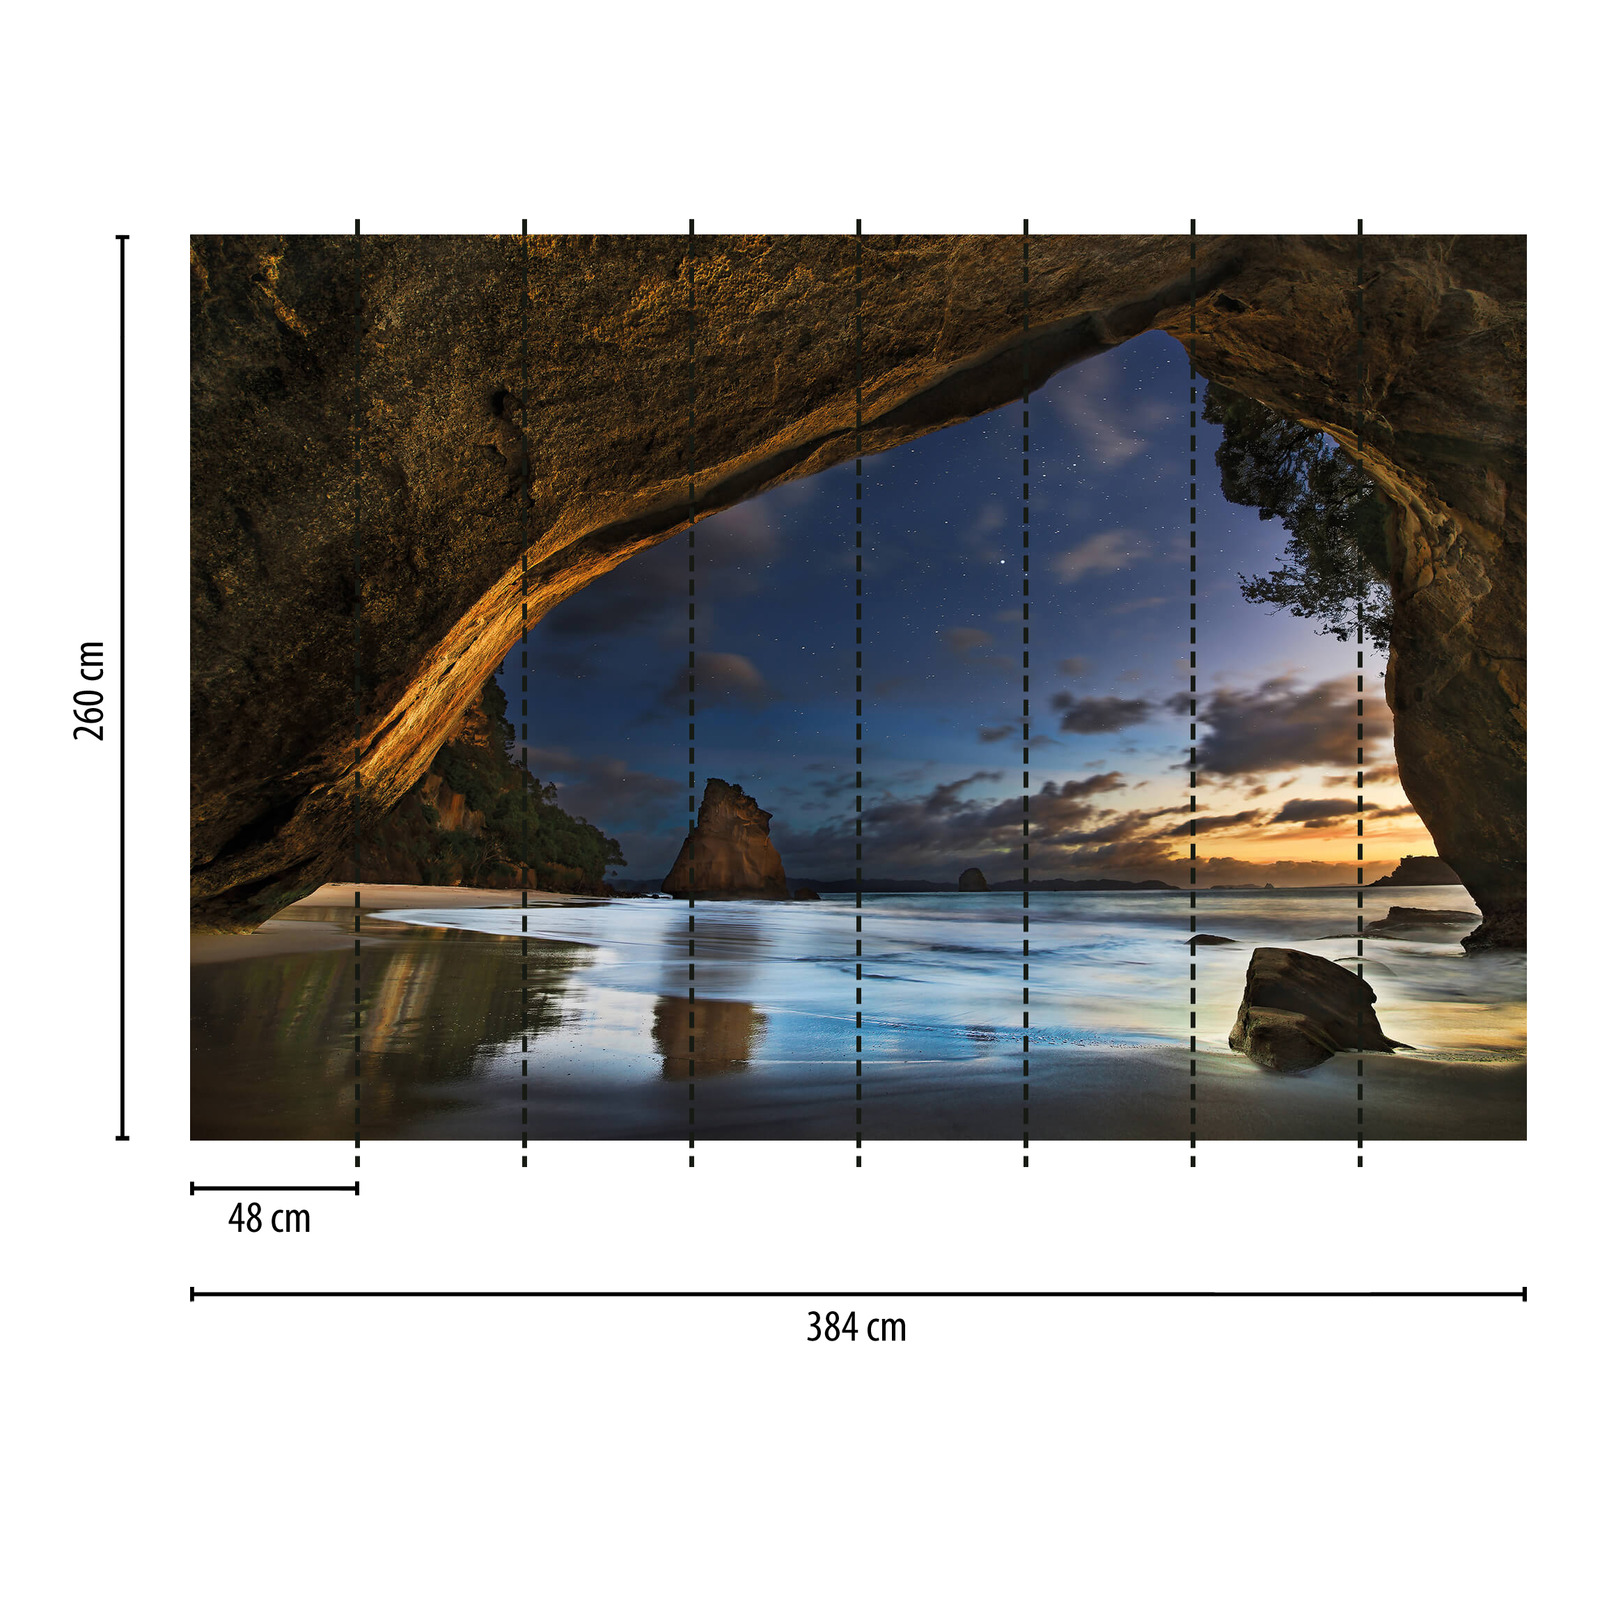             Fototapete Natur Höhle in Neuseeland – Braun, Blau
        